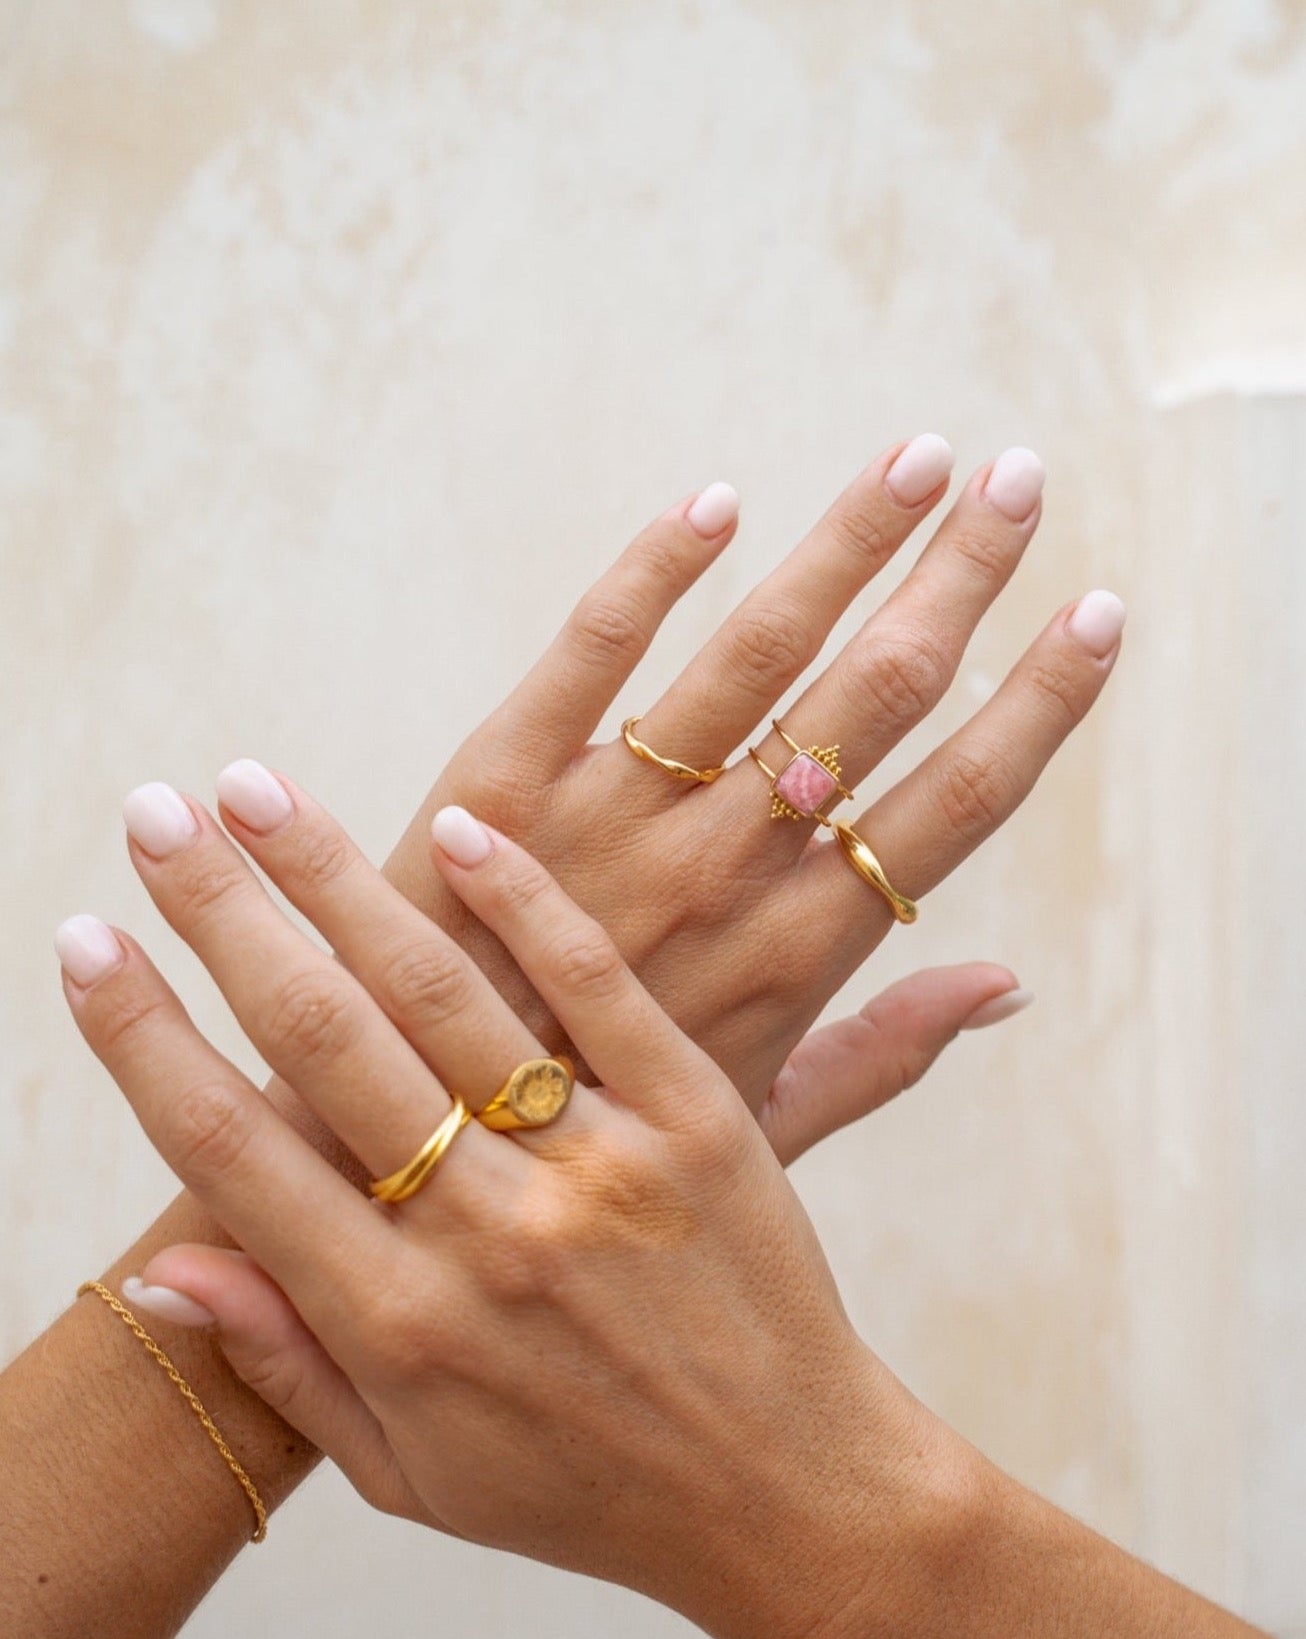 Eingedrehter goldener Ring | VERLAN Jewellery | handgemachter schmuck aus Bali | das perfekte Geschenk für Freundin finden